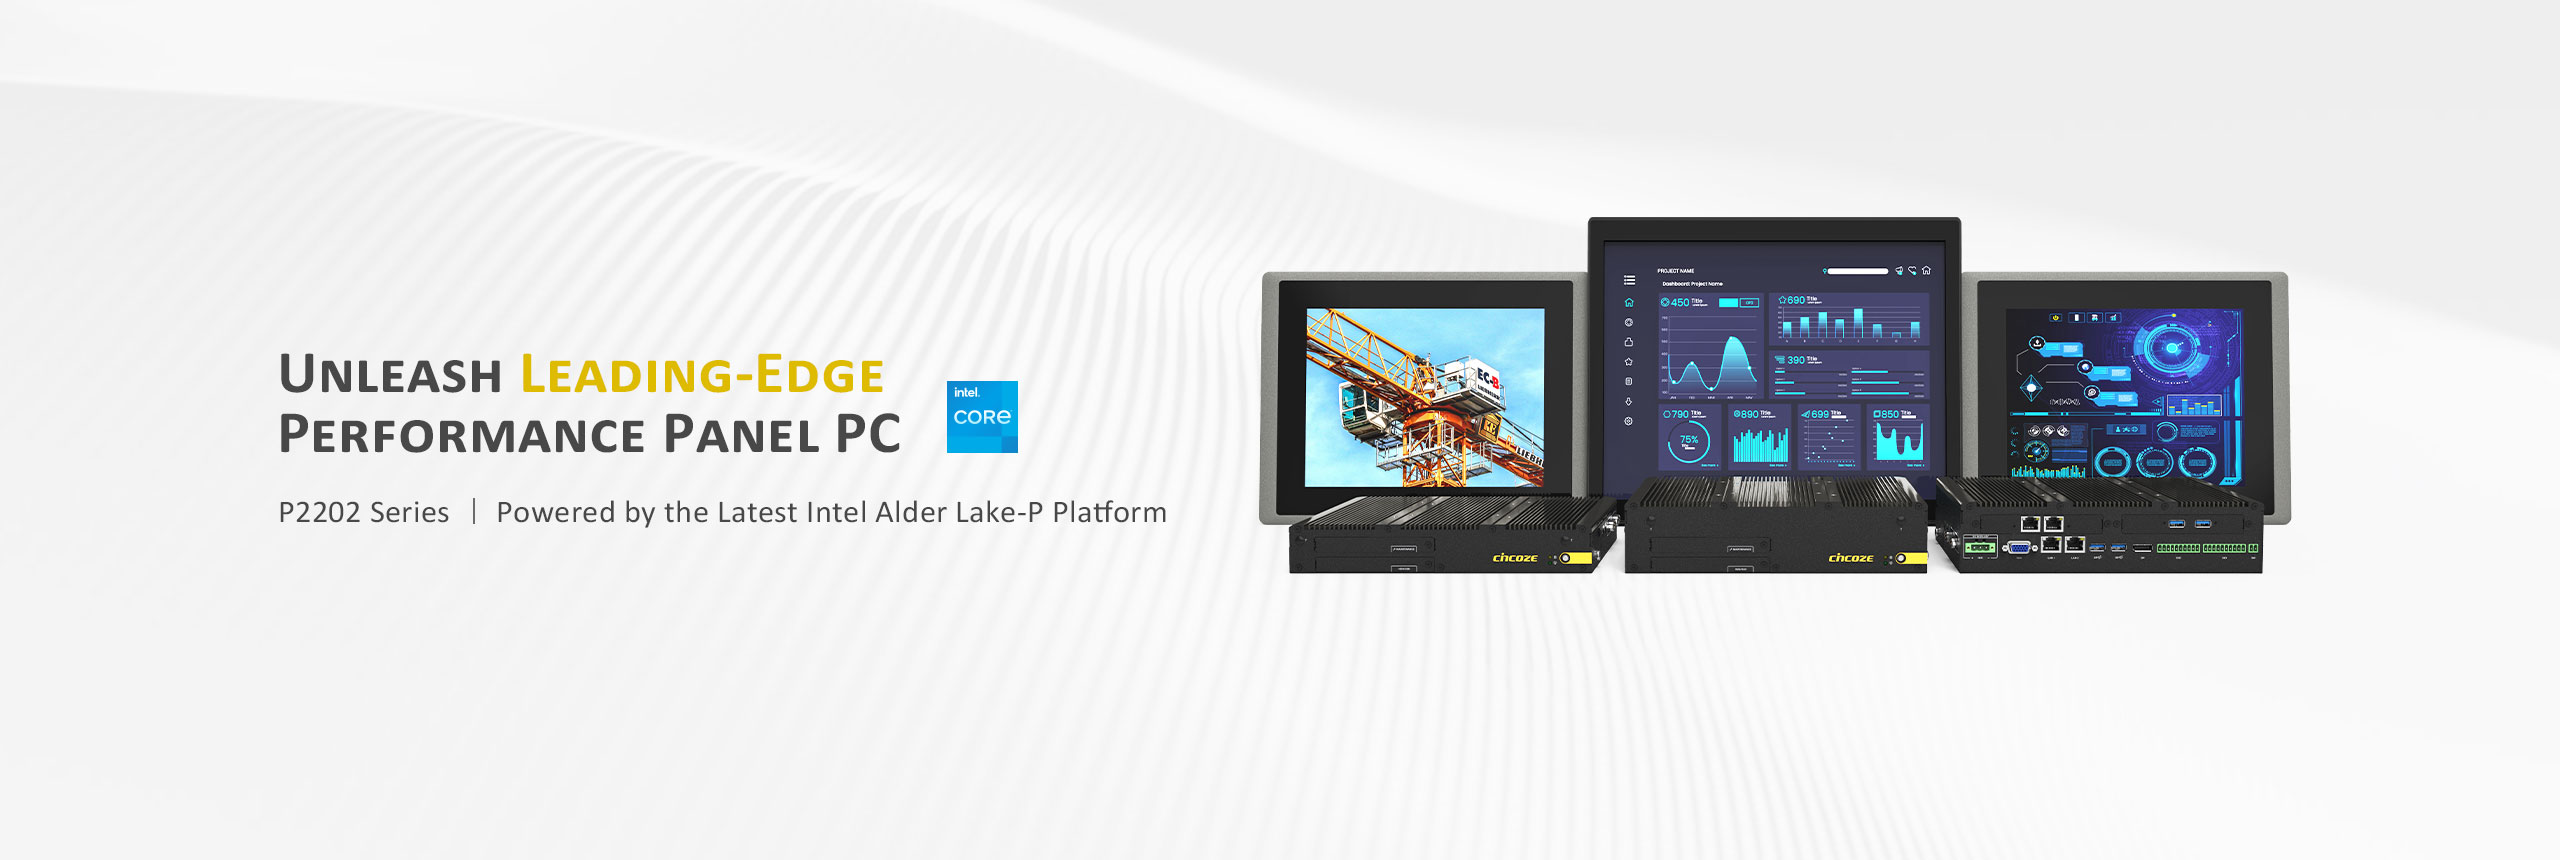 Cincoze unveils its latest Alder Lake-P high-performance panel PCs